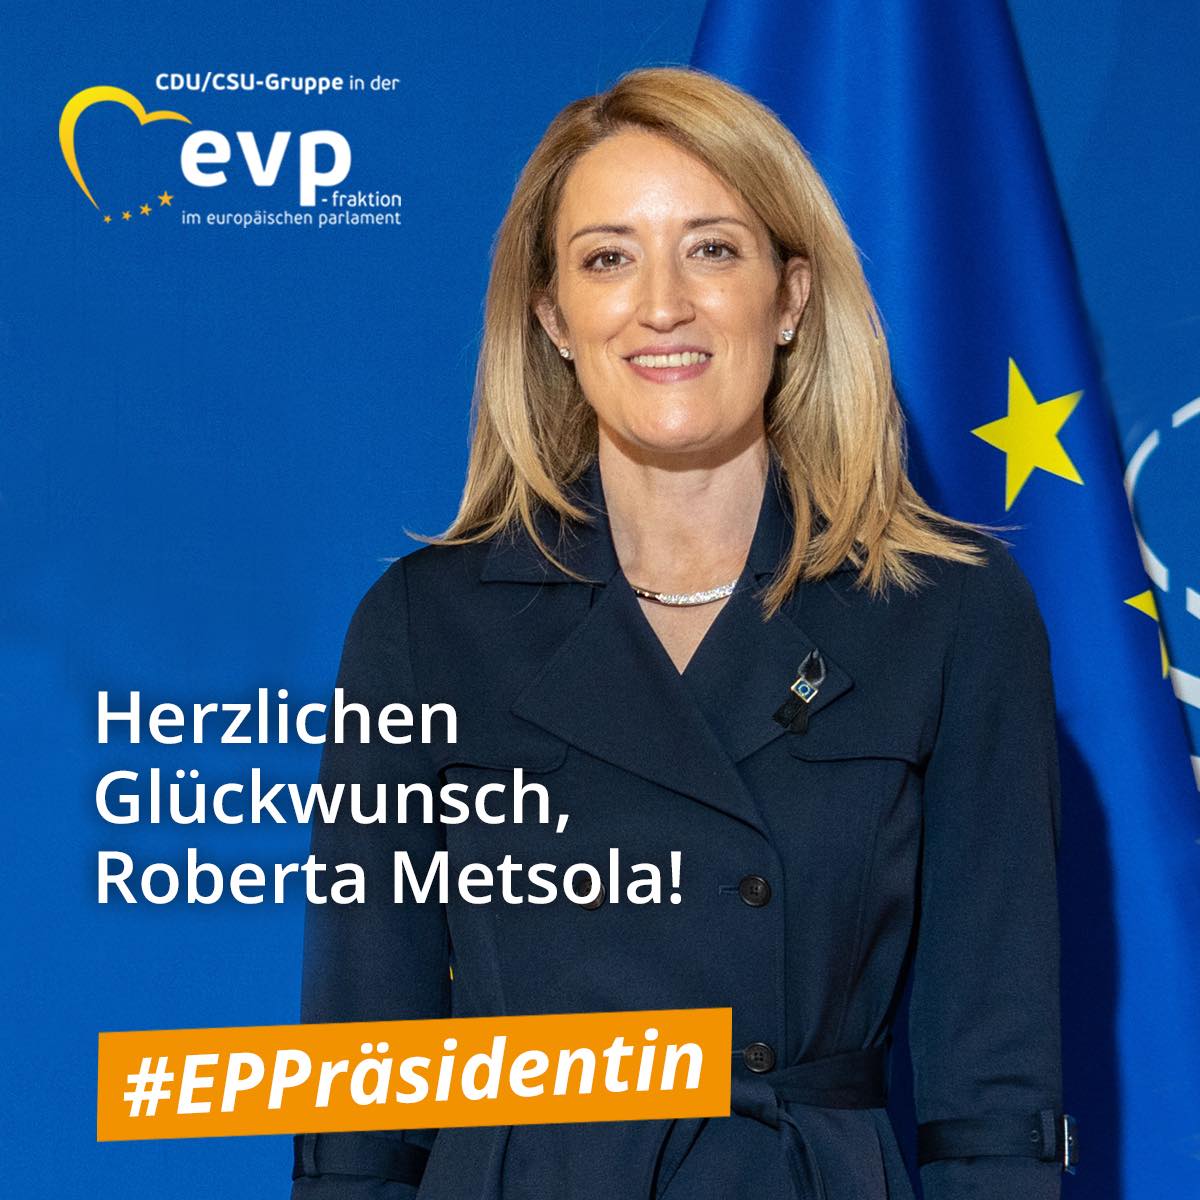 Roberta Metsola ist neue Präsidentin des Europaparlaments